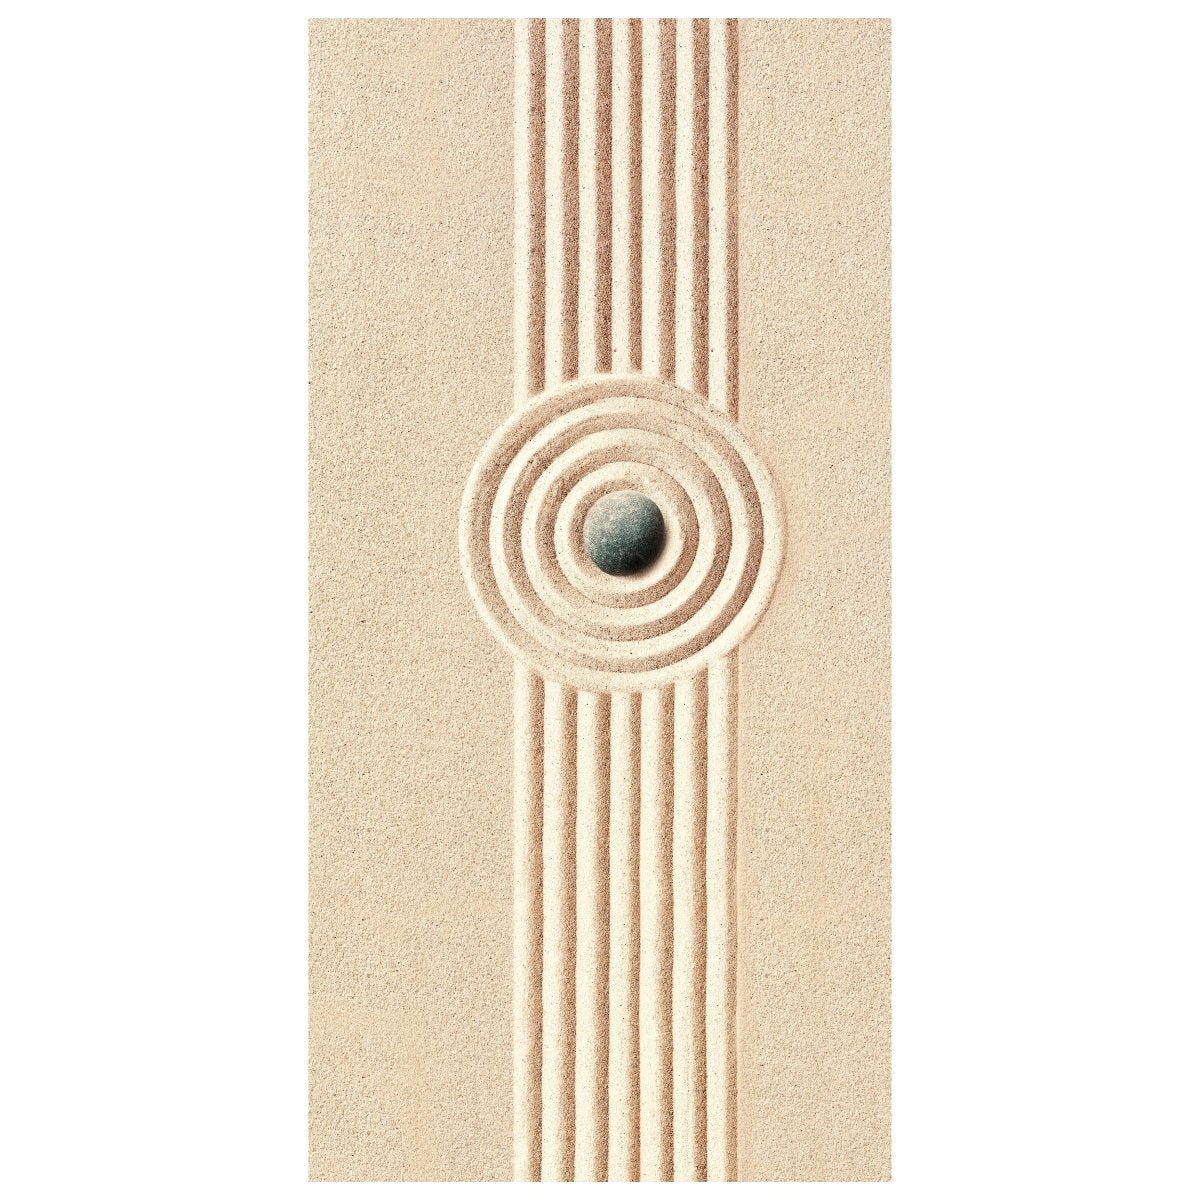 Türtapete Stein im Sand, Formen, Ringe, Linien M1391 - Bild 2